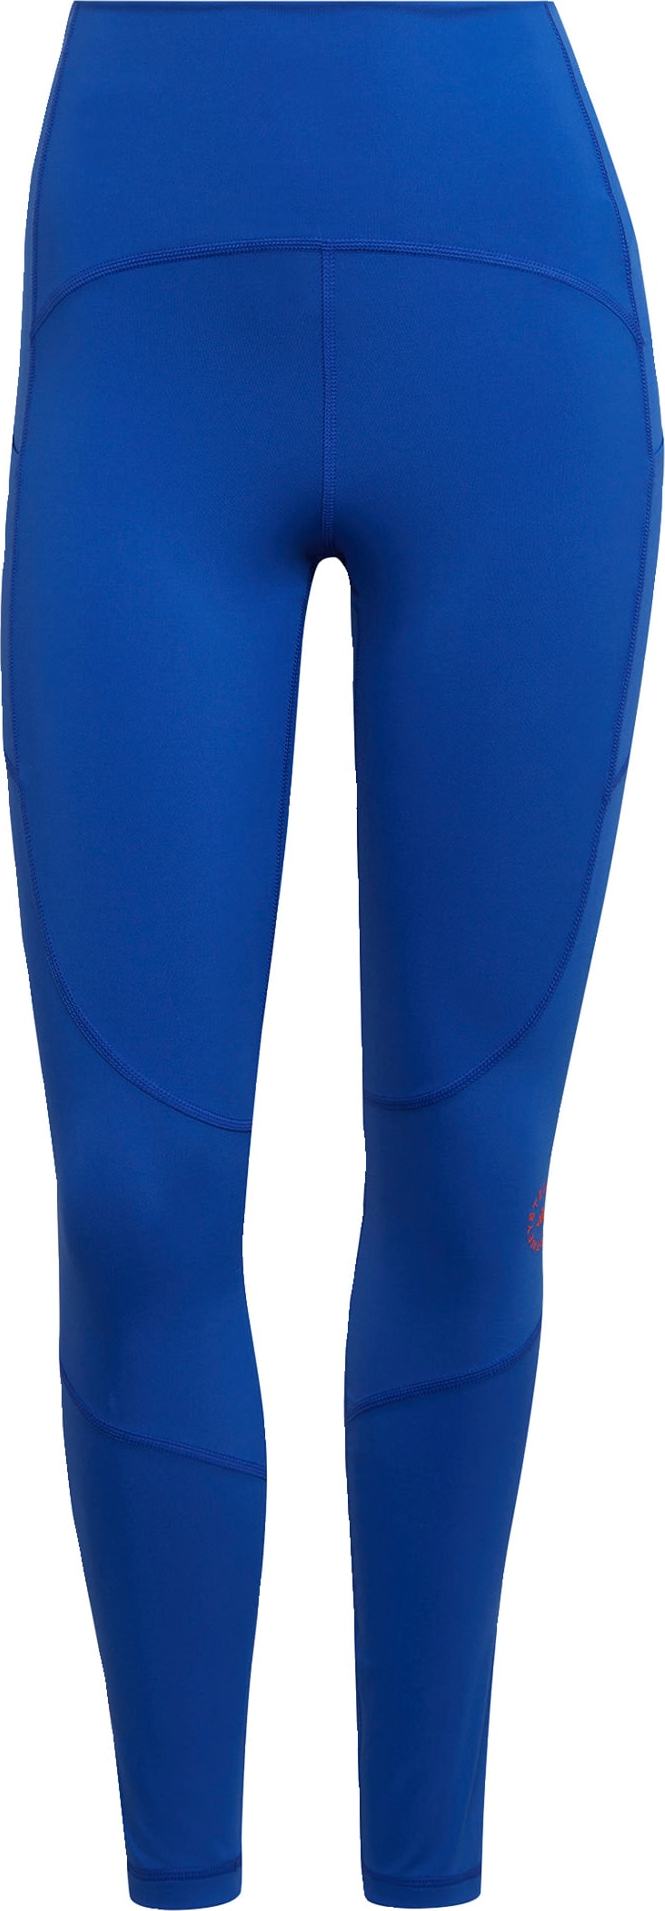 ADIDAS BY STELLA MCCARTNEY Sportovní kalhoty královská modrá